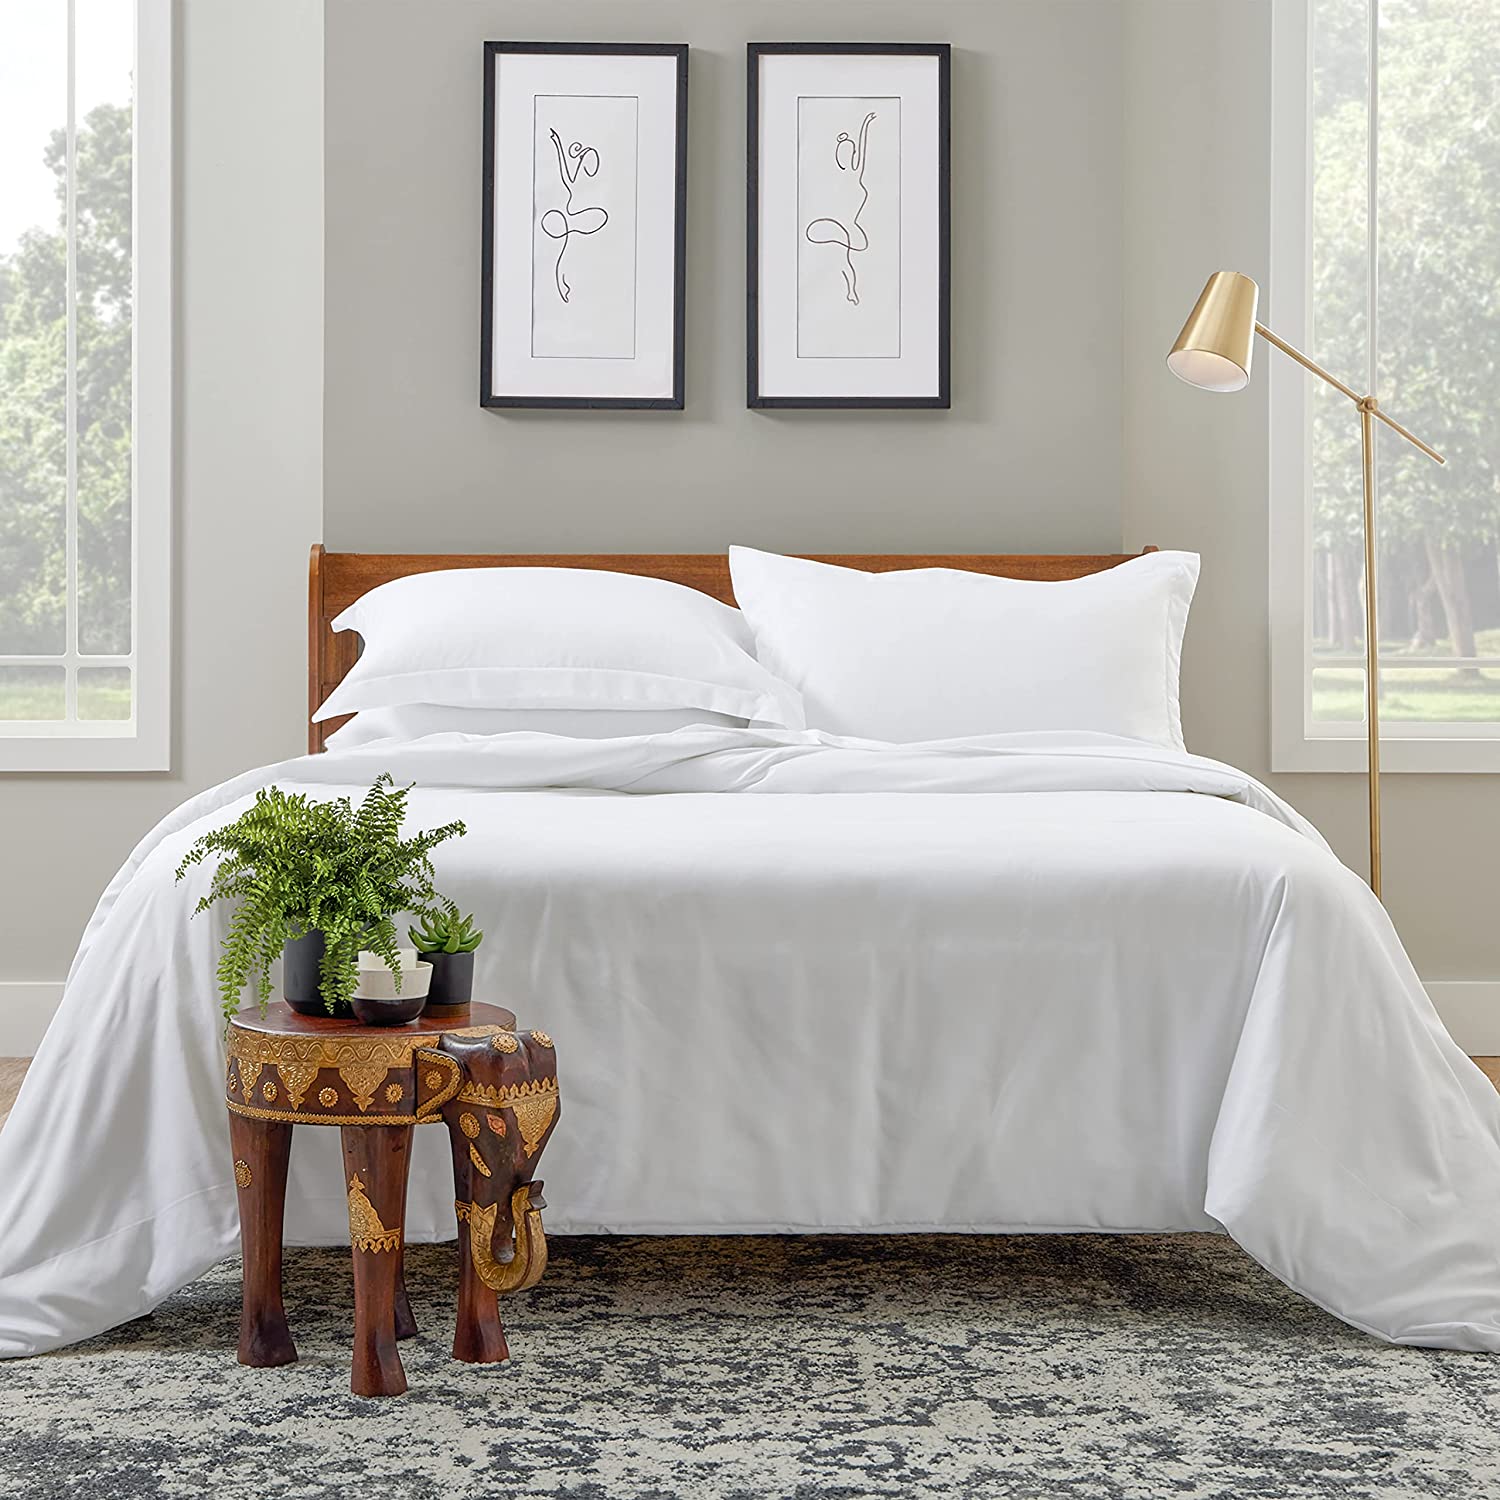 ຊຸດຜ້າປູບ່ອນນອນ Luxury Duvet 3 Piece Blend Ultra Soft Bedding Zippered Comforter Protector ລວມມີ 2 Pillow Shams